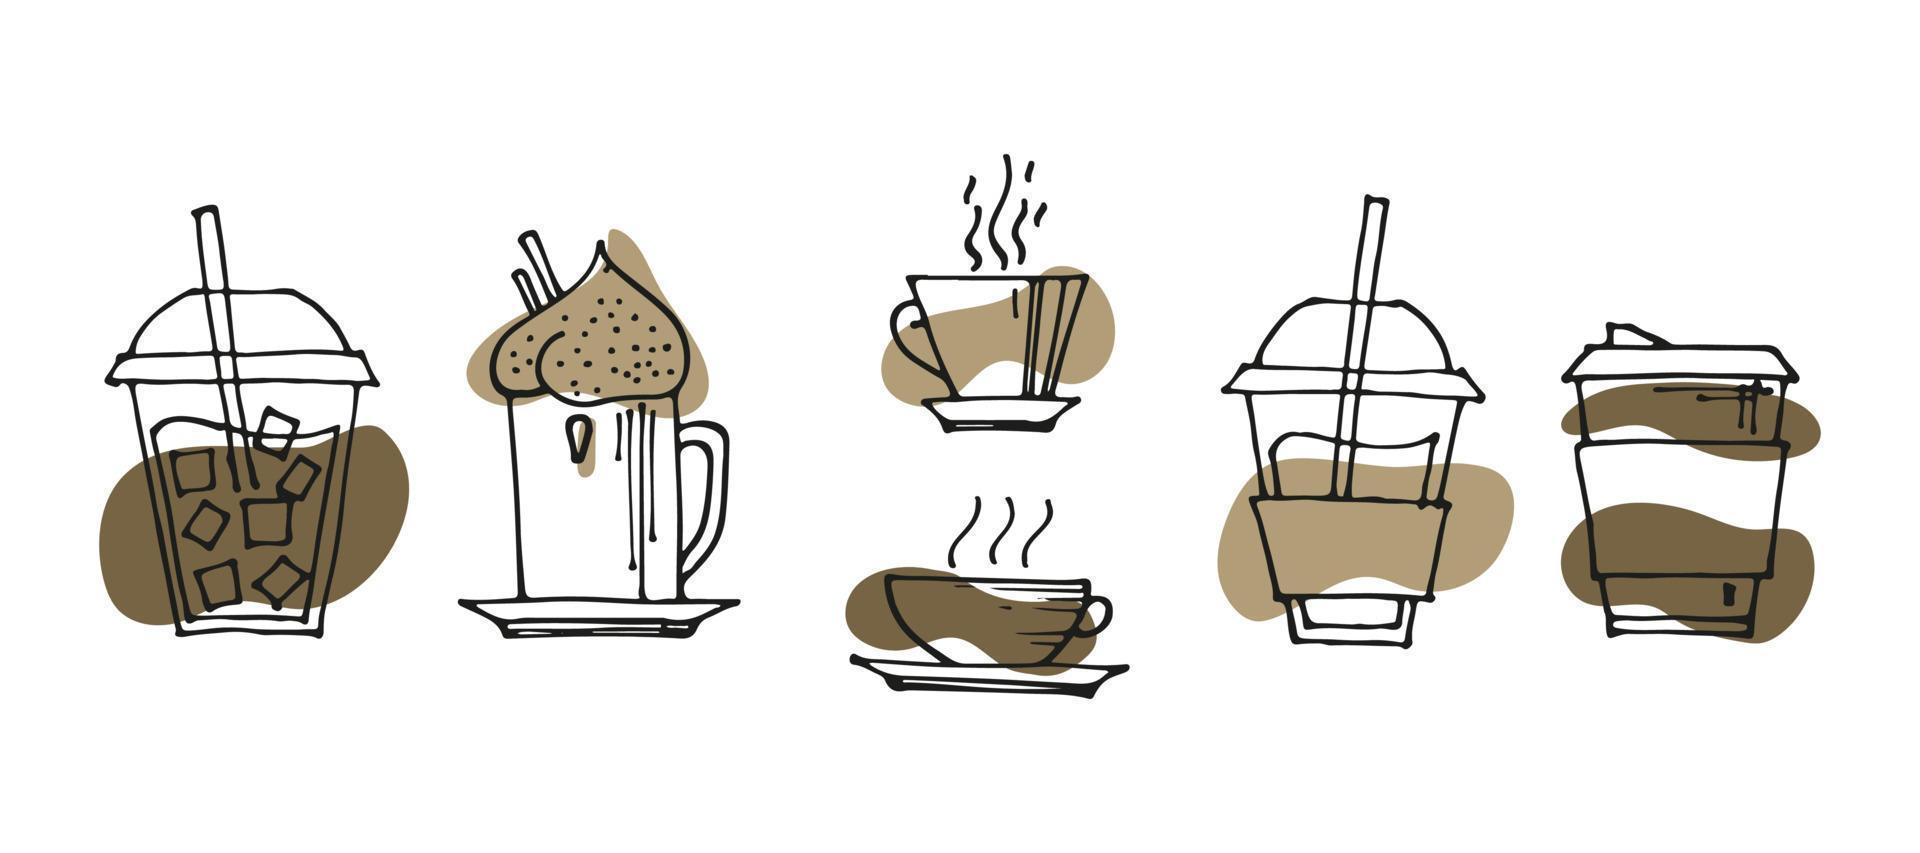 conjunto de garabatos de café dibujados a mano, bebidas, postres, frijoles y otros objetos relacionados. fondo de ilustración de dibujo vectorial vector